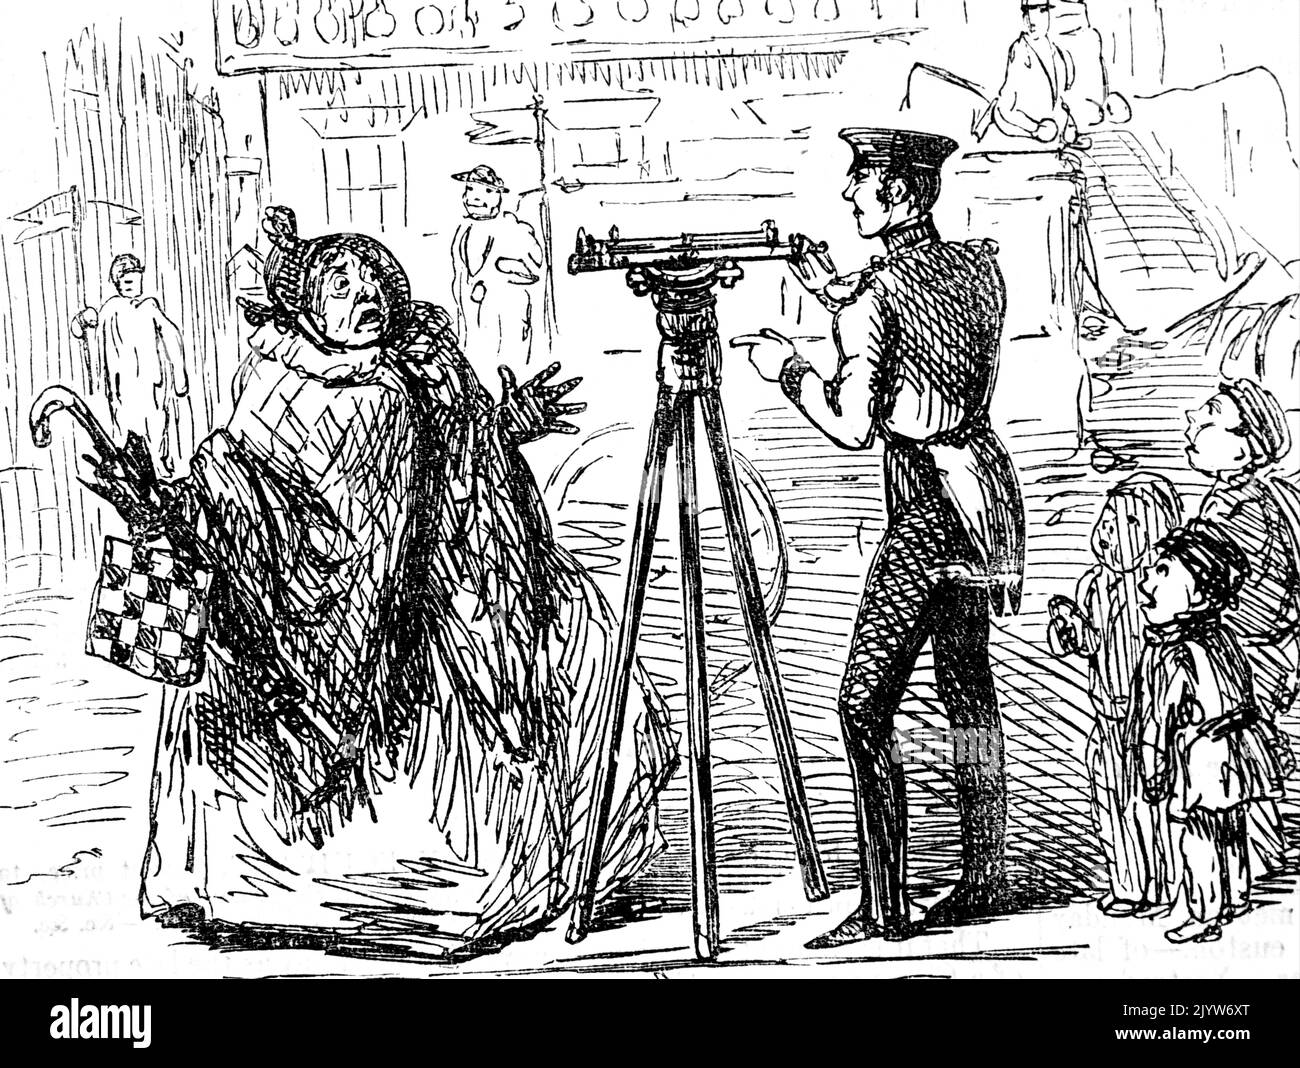 Karikatur von John Leech (1817-1864), einem englischen Karikaturisten und Illustrator. Datiert aus dem 19.. Jahrhundert Stockfoto